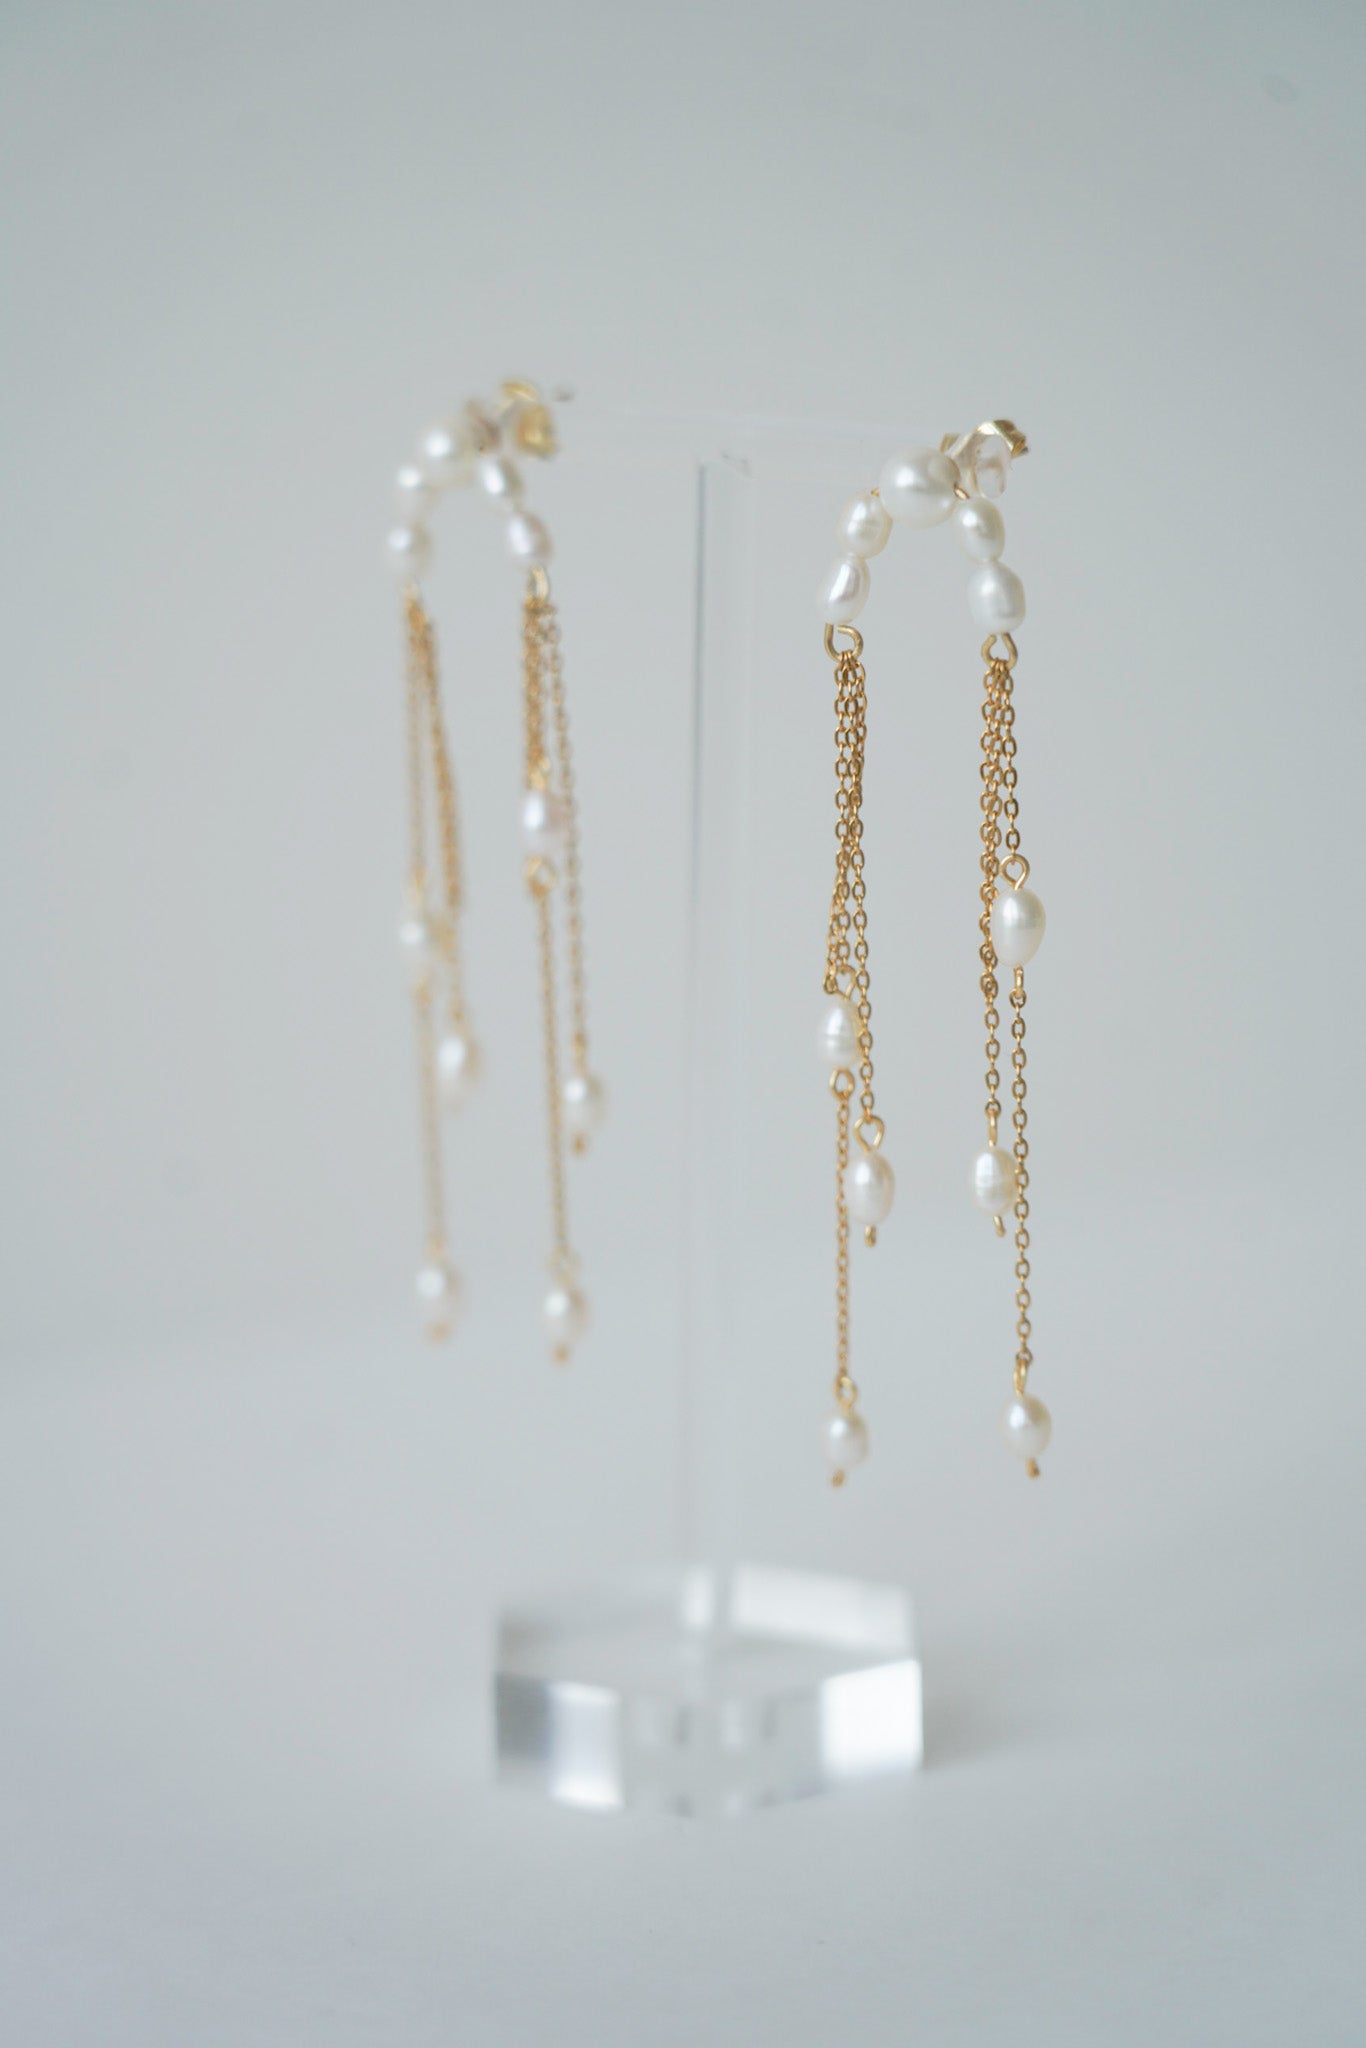 boucles d'oreilles féminine faite avec des perles naturelles et un demi quart de lune attaché avec de la chaine dorée